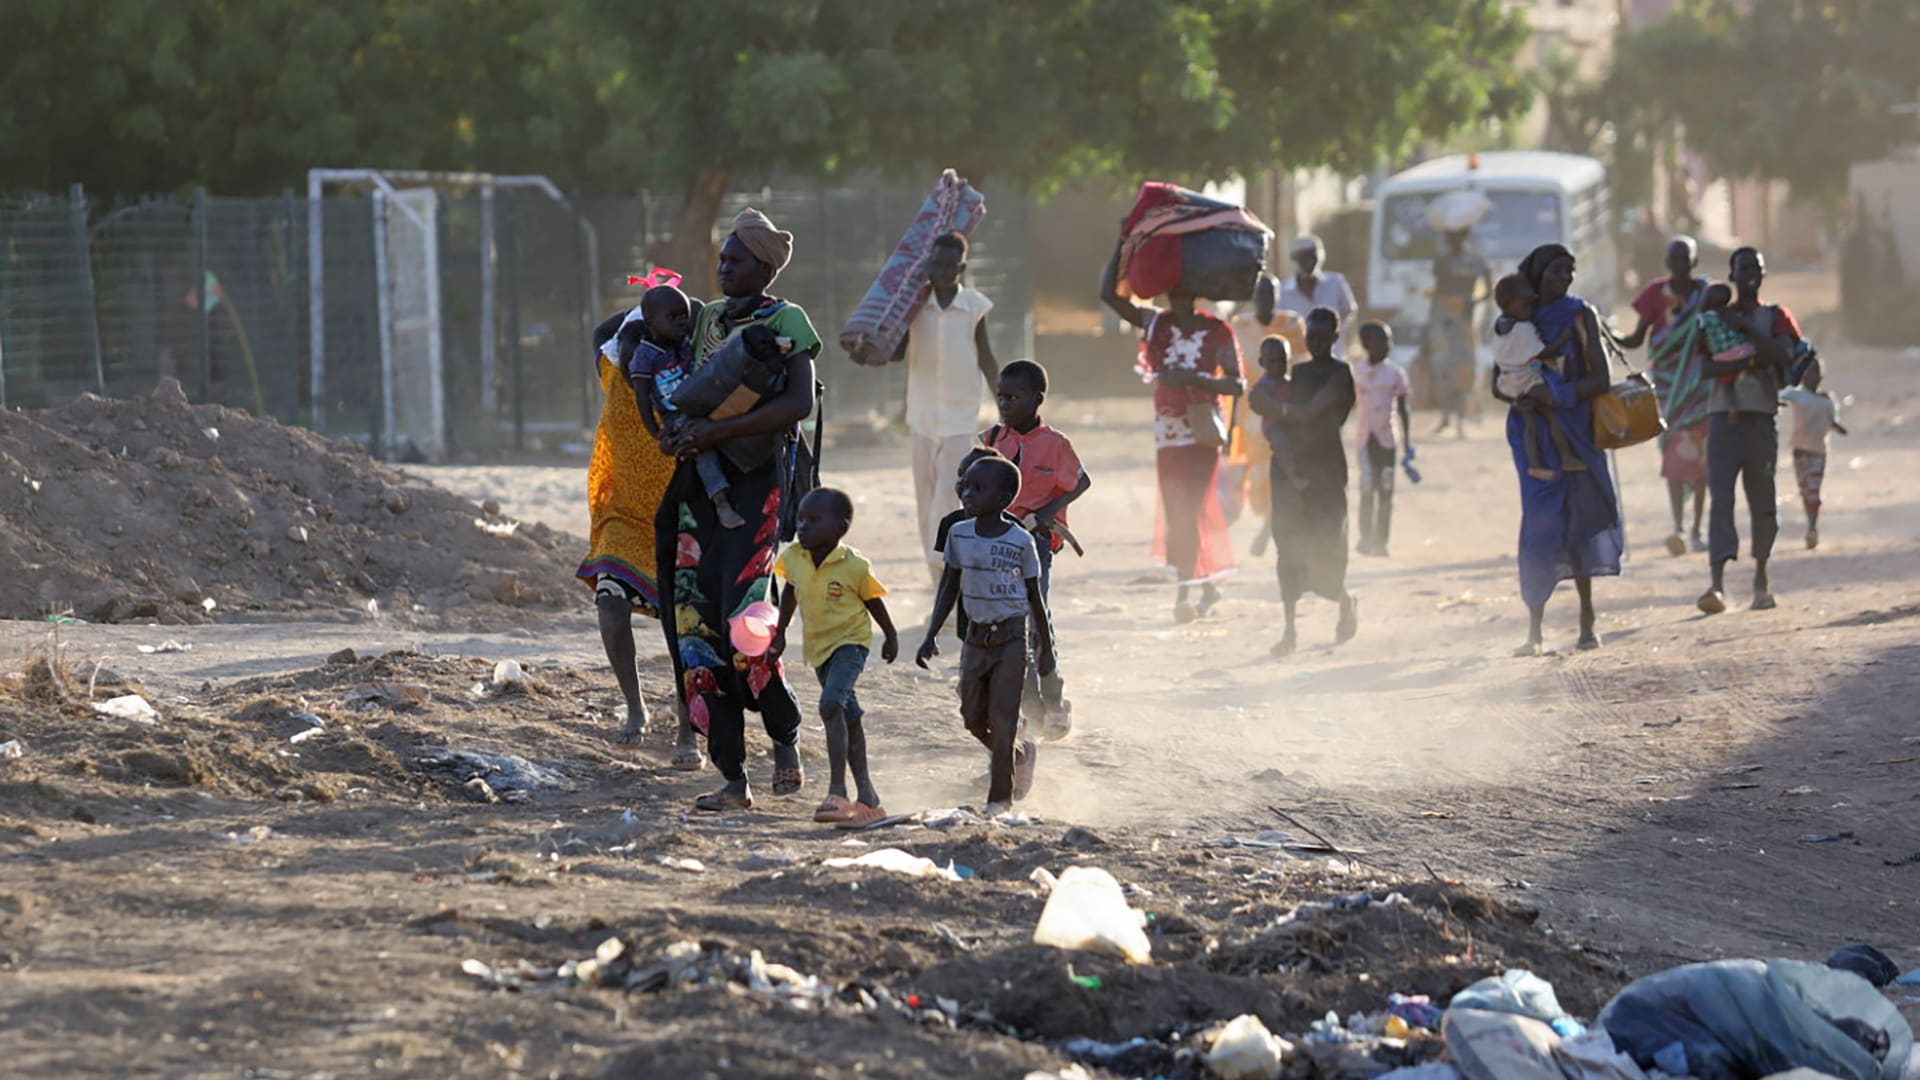 "اليونيسف" تحذر من "تصاعد العنف" في السودان: يعرض ملايين الأطفال للخطر